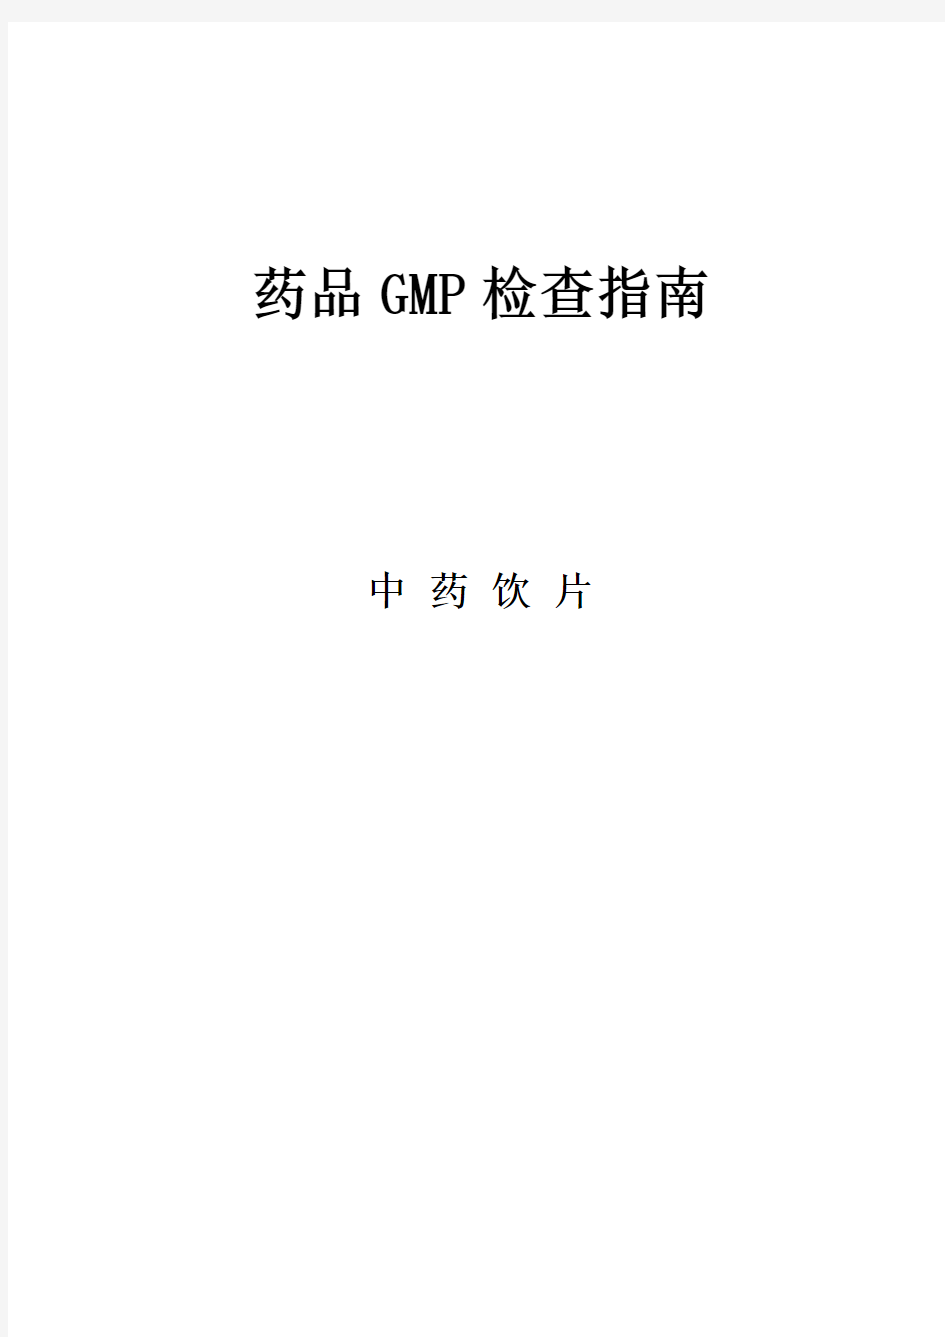 药品GMP检查指南(中药饮片)